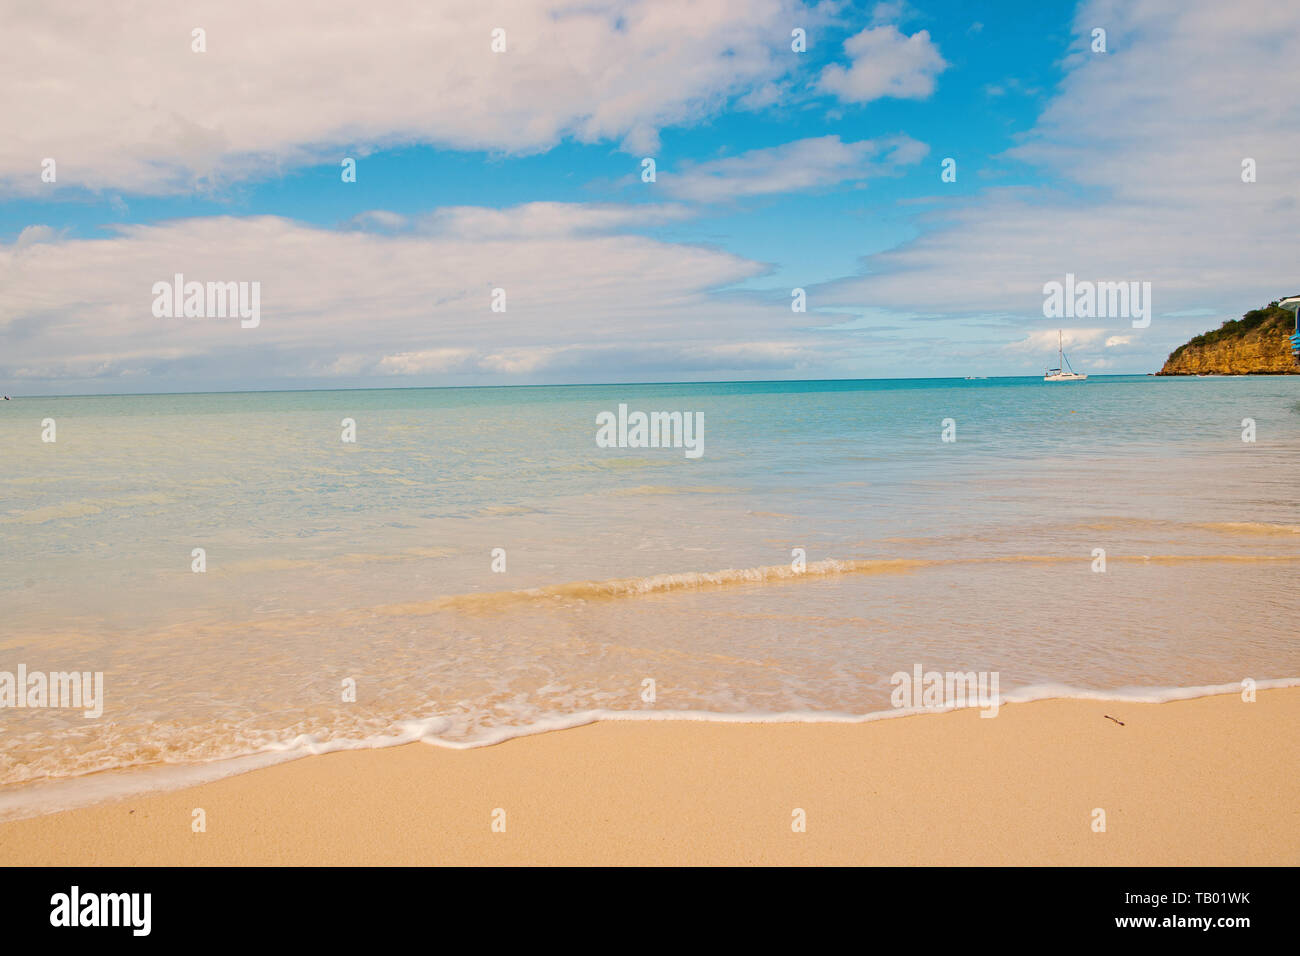 Mare spiaggia di St Johns, Antigua. Acqua trasparente presso la spiaggia di sabbia bianca. Idilliaci paesaggi marini. Scoperta e wanderlust. Vacanze estive sull isola tropicale con spiaggia perfetta. Tempo di spiaggia. Foto Stock